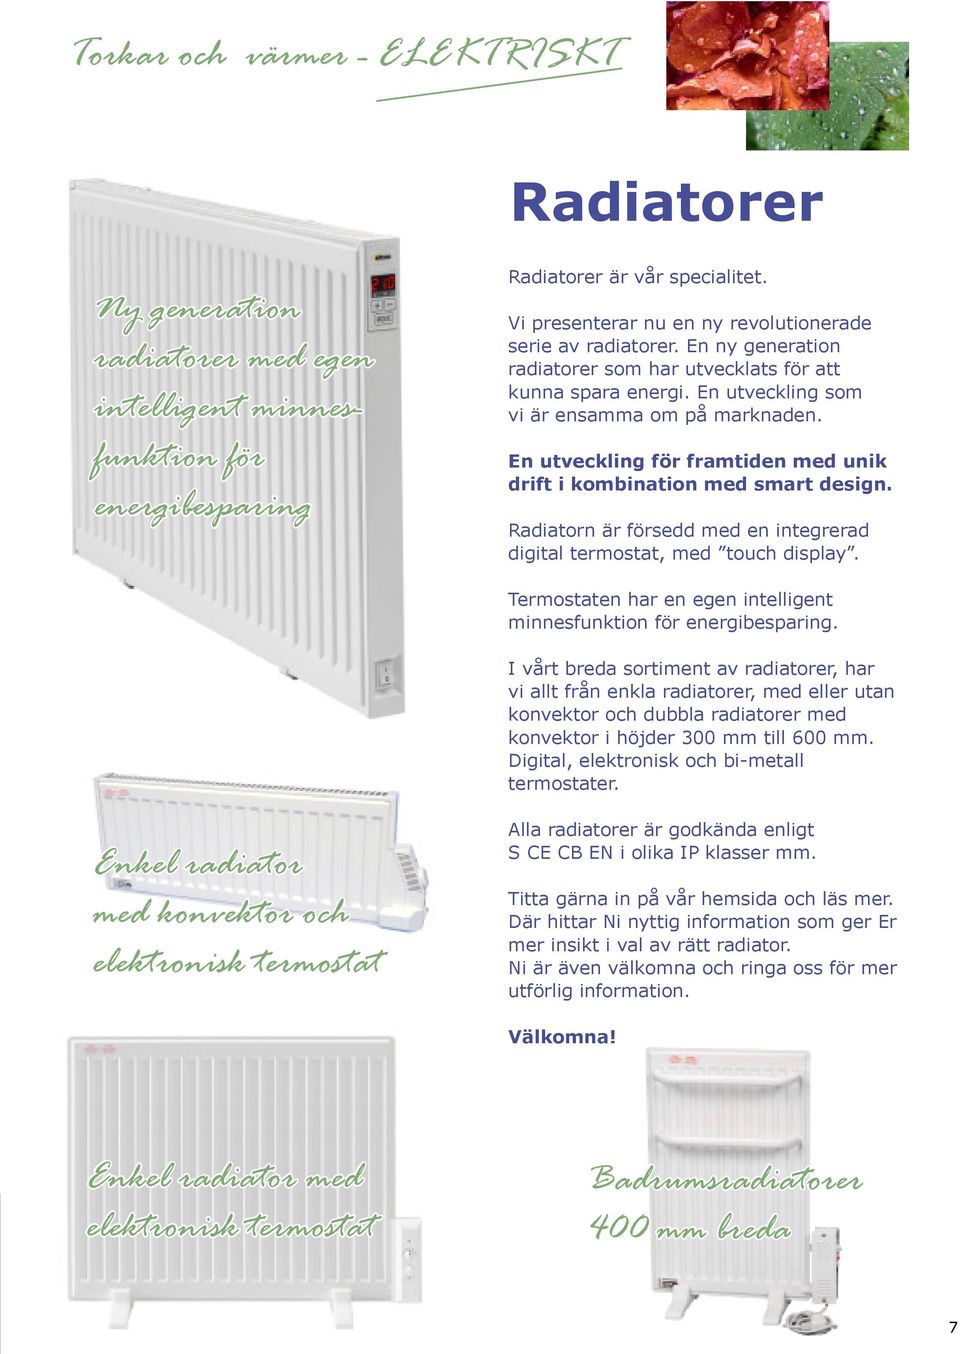 Radiatorn Är försedd med en integrerad digital termostat, med touch display. Termostaten har en egen intelligent minnesfunktion för energibesparing.